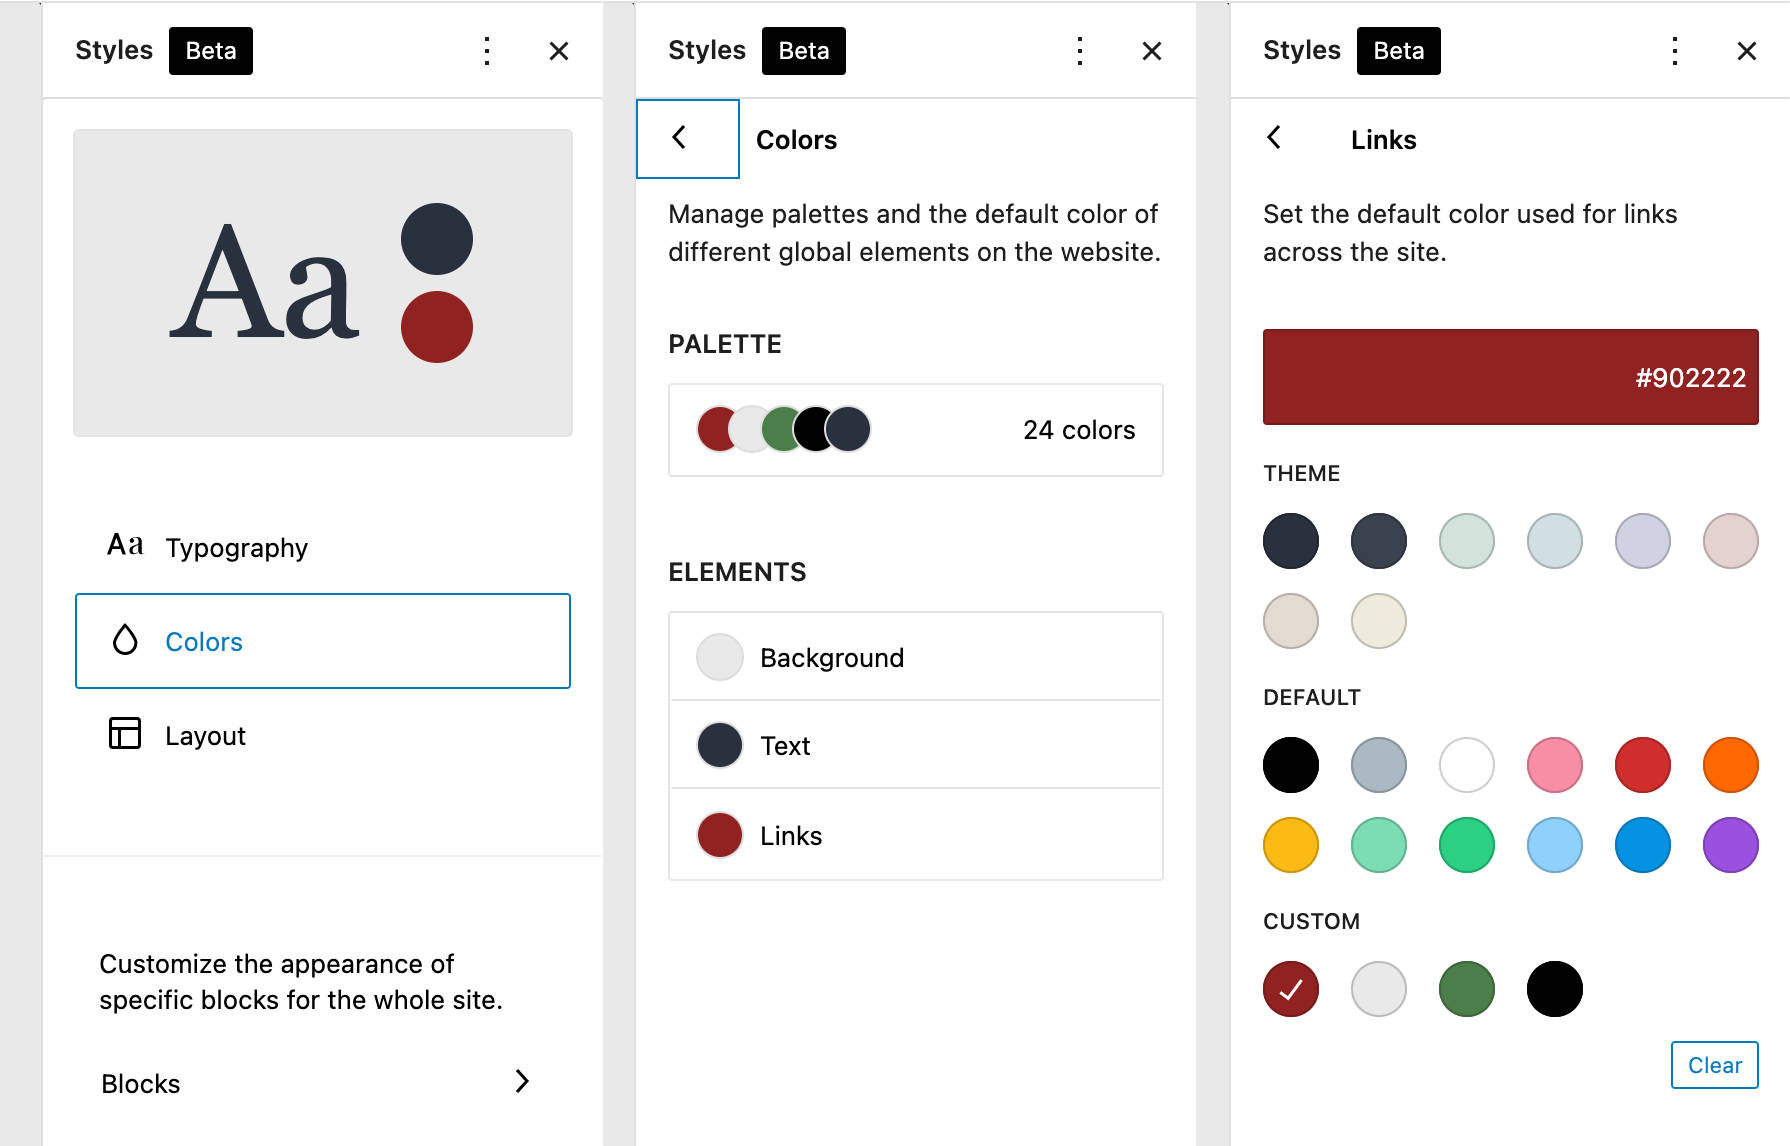 TT1 塊顏色設置，顯示三個獨立調色板選項的各種色環：主題、默認和自定義。